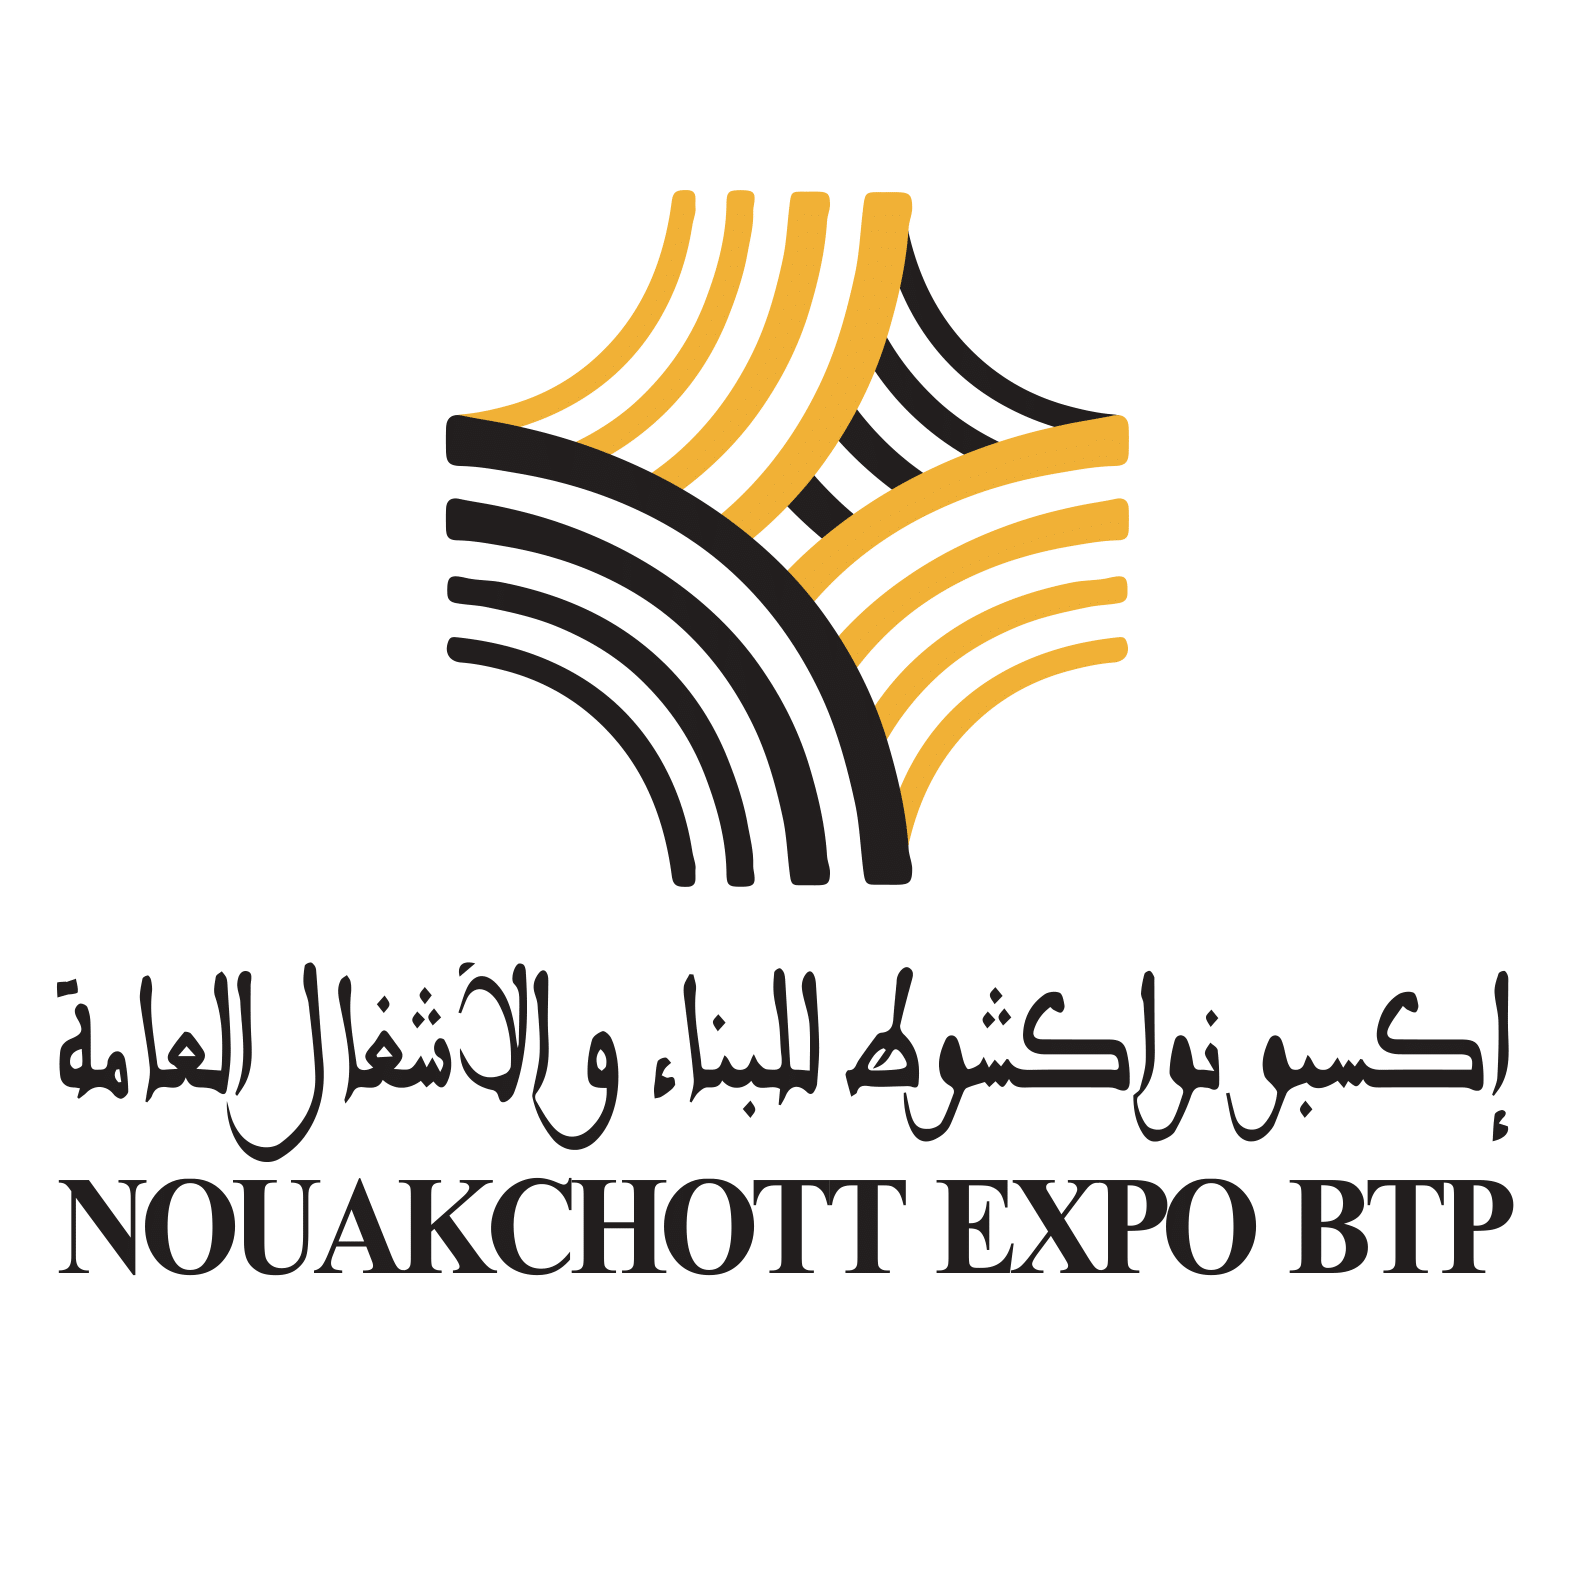 NOUAKCHOTT EXPO